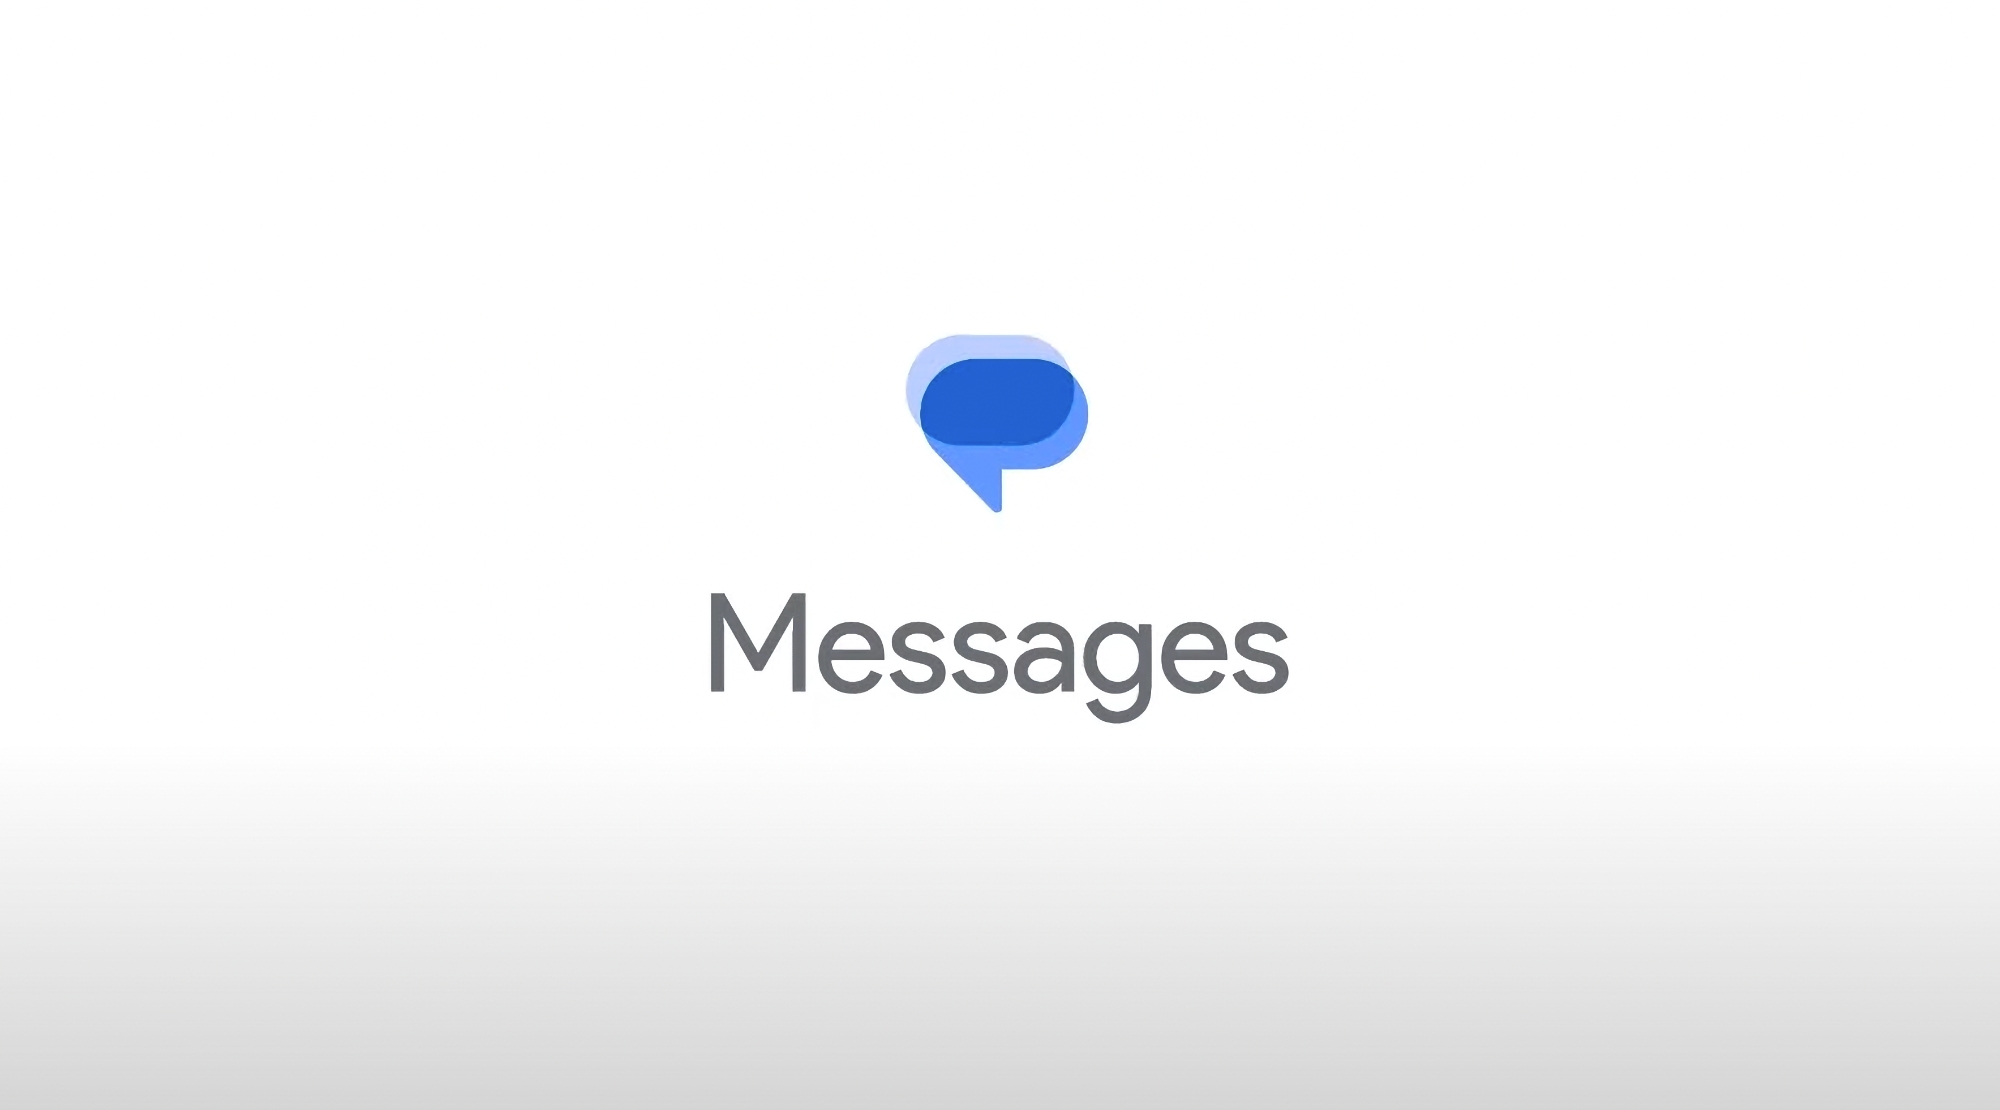 Google Messaggi ha ricevuto un importante aggiornamento: nuova icona dell'app, supporto PiP per YouTube e reazioni ai messaggi